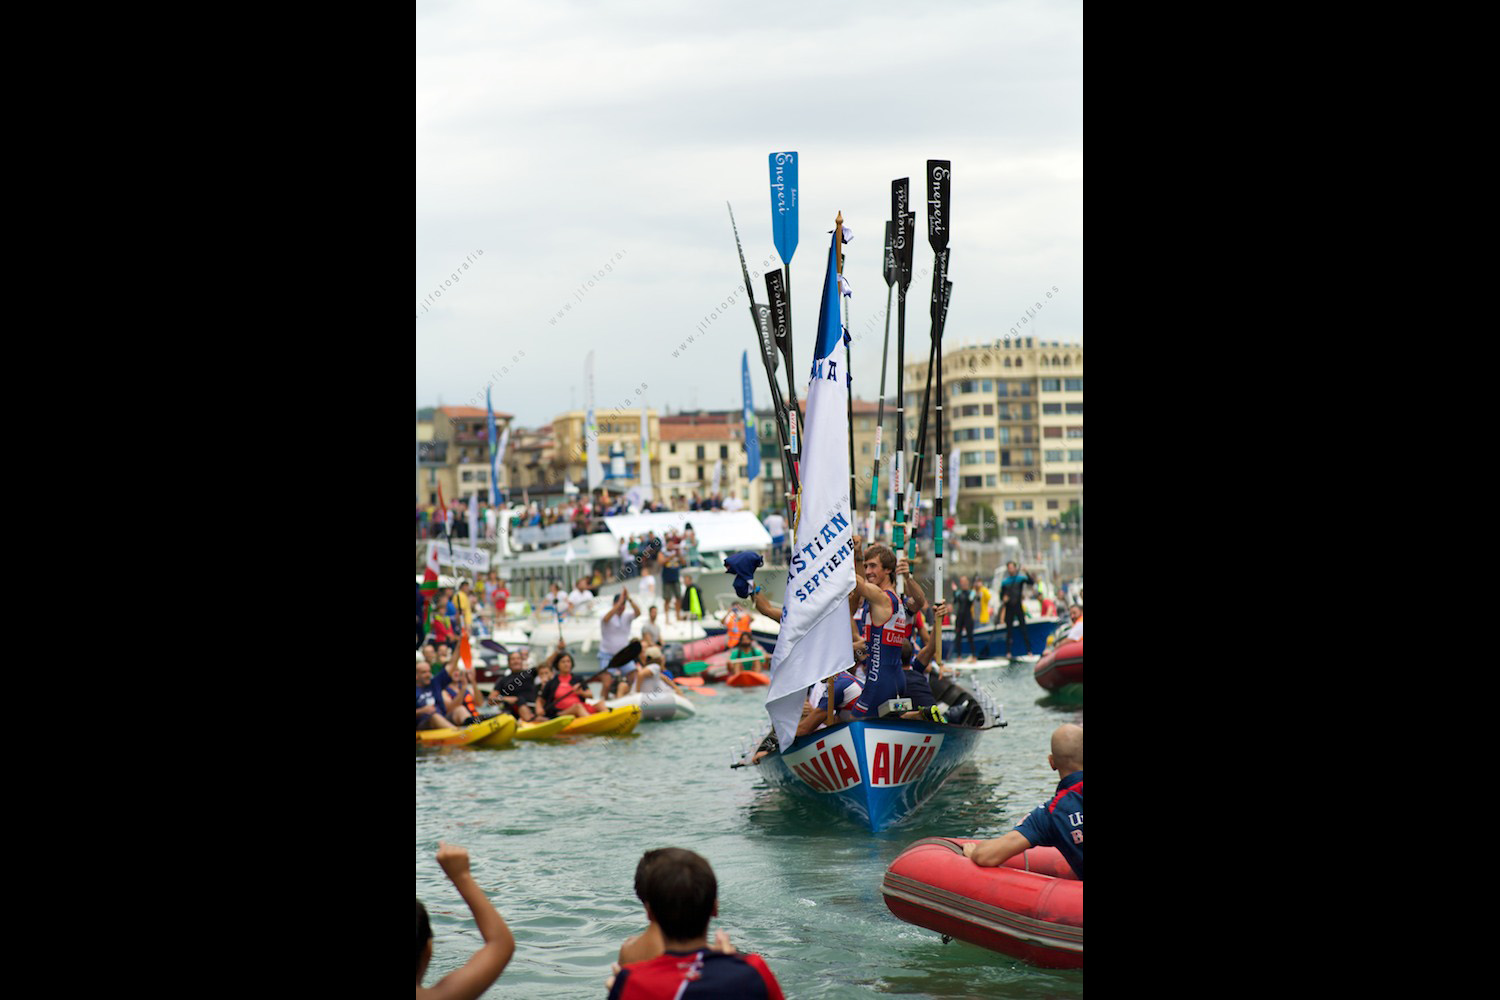 Los vencedores de la edición 2015 de la bandera de la Concha de Donostia llegan a puerto, remos al cielo, jaleados por miles de aficionados